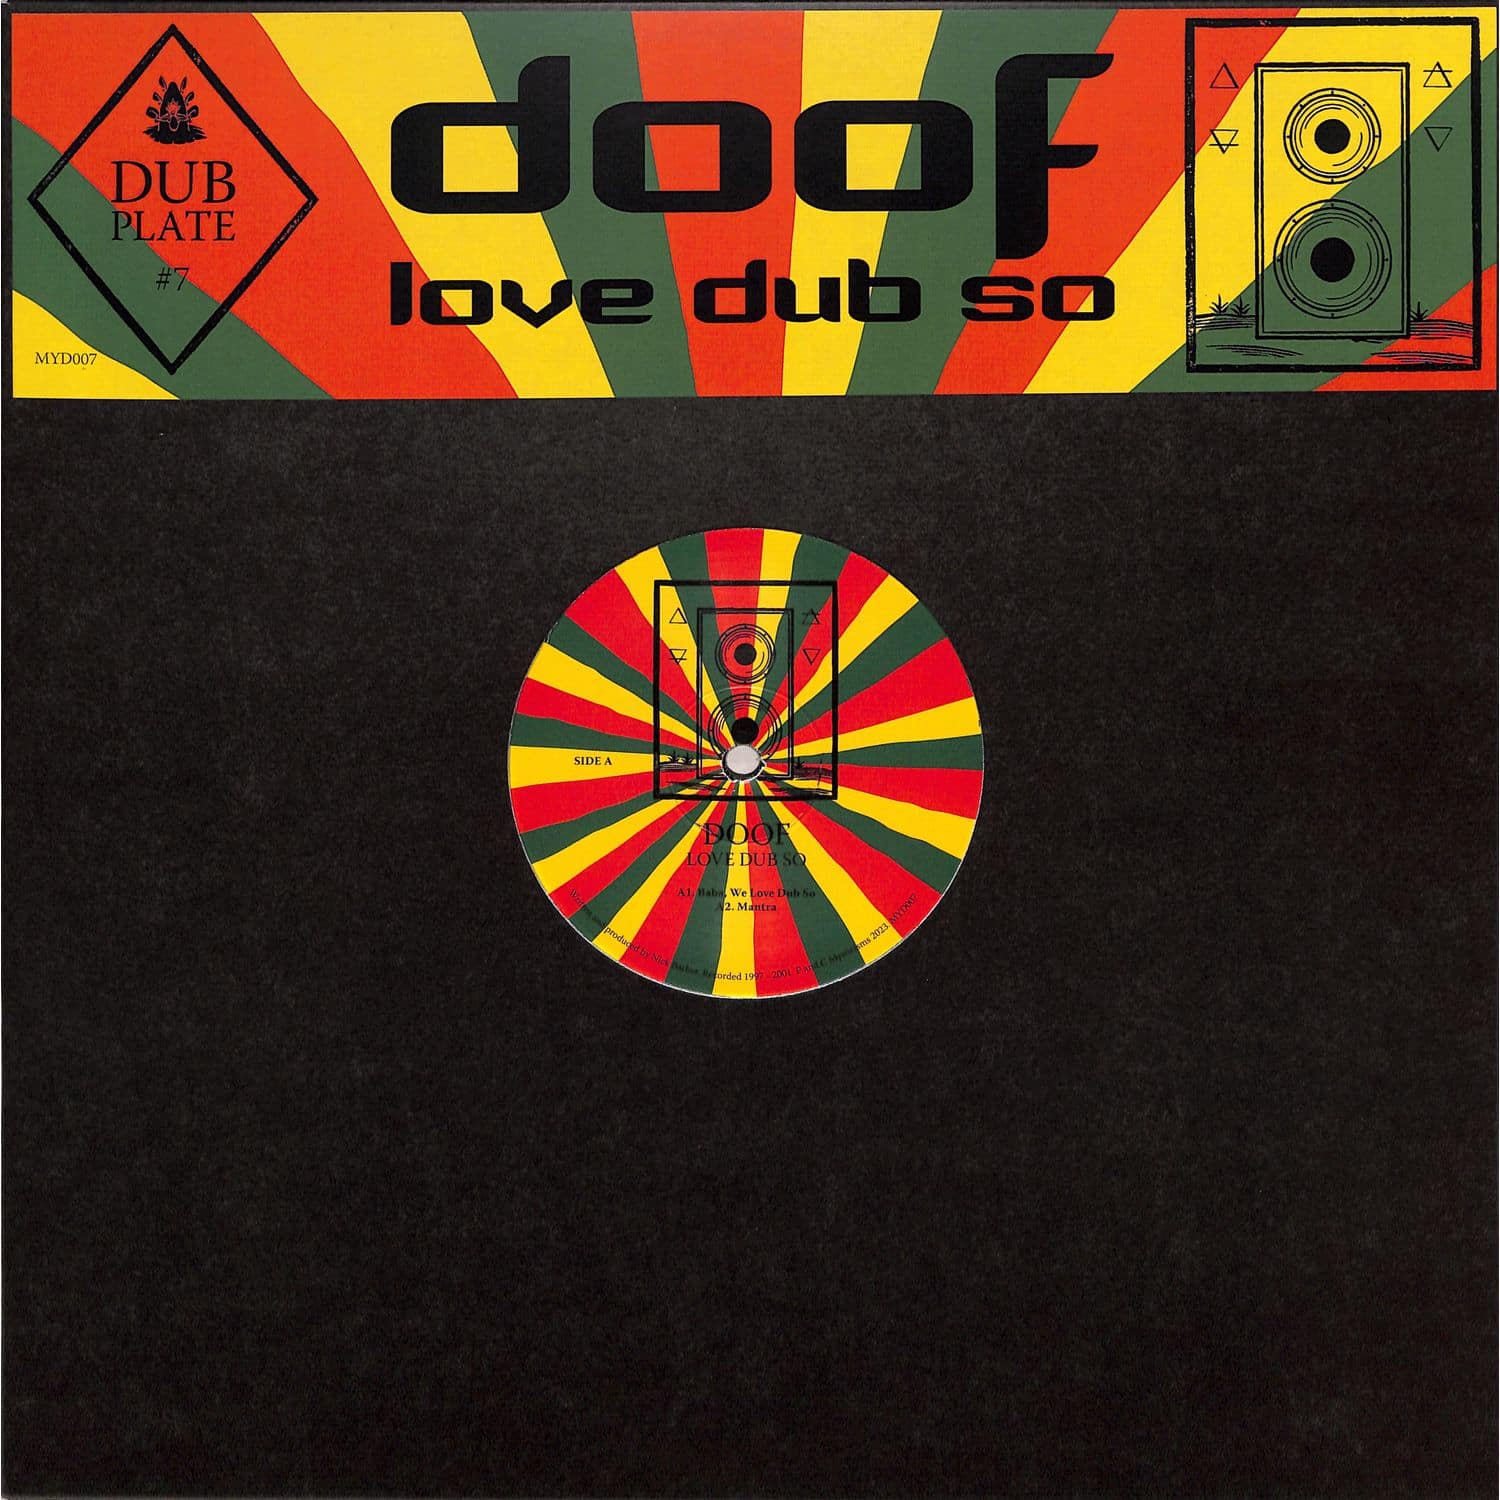 Doof - DUBPLATE #7: LOVE DUB SO